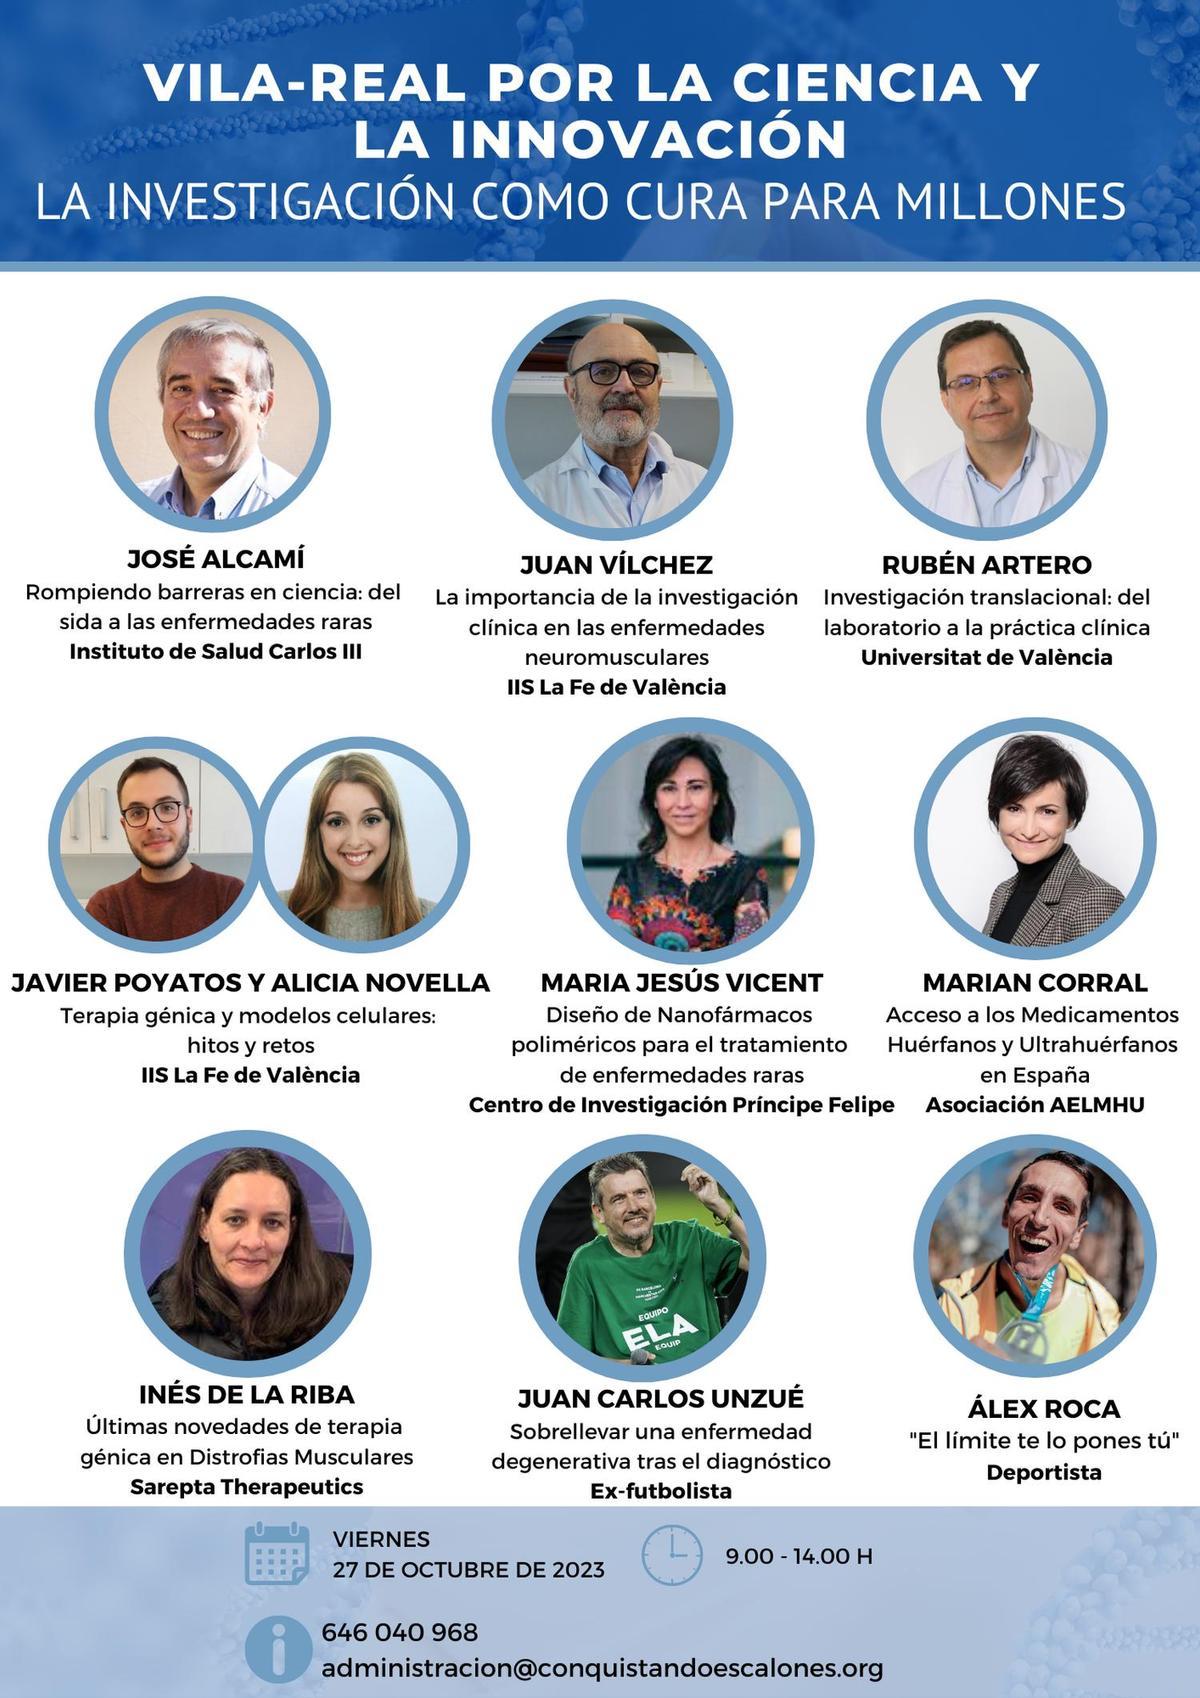 Científicos de diferentes centros de investigación estarán en el congreso médico del 27 de octubre en Vila-real.